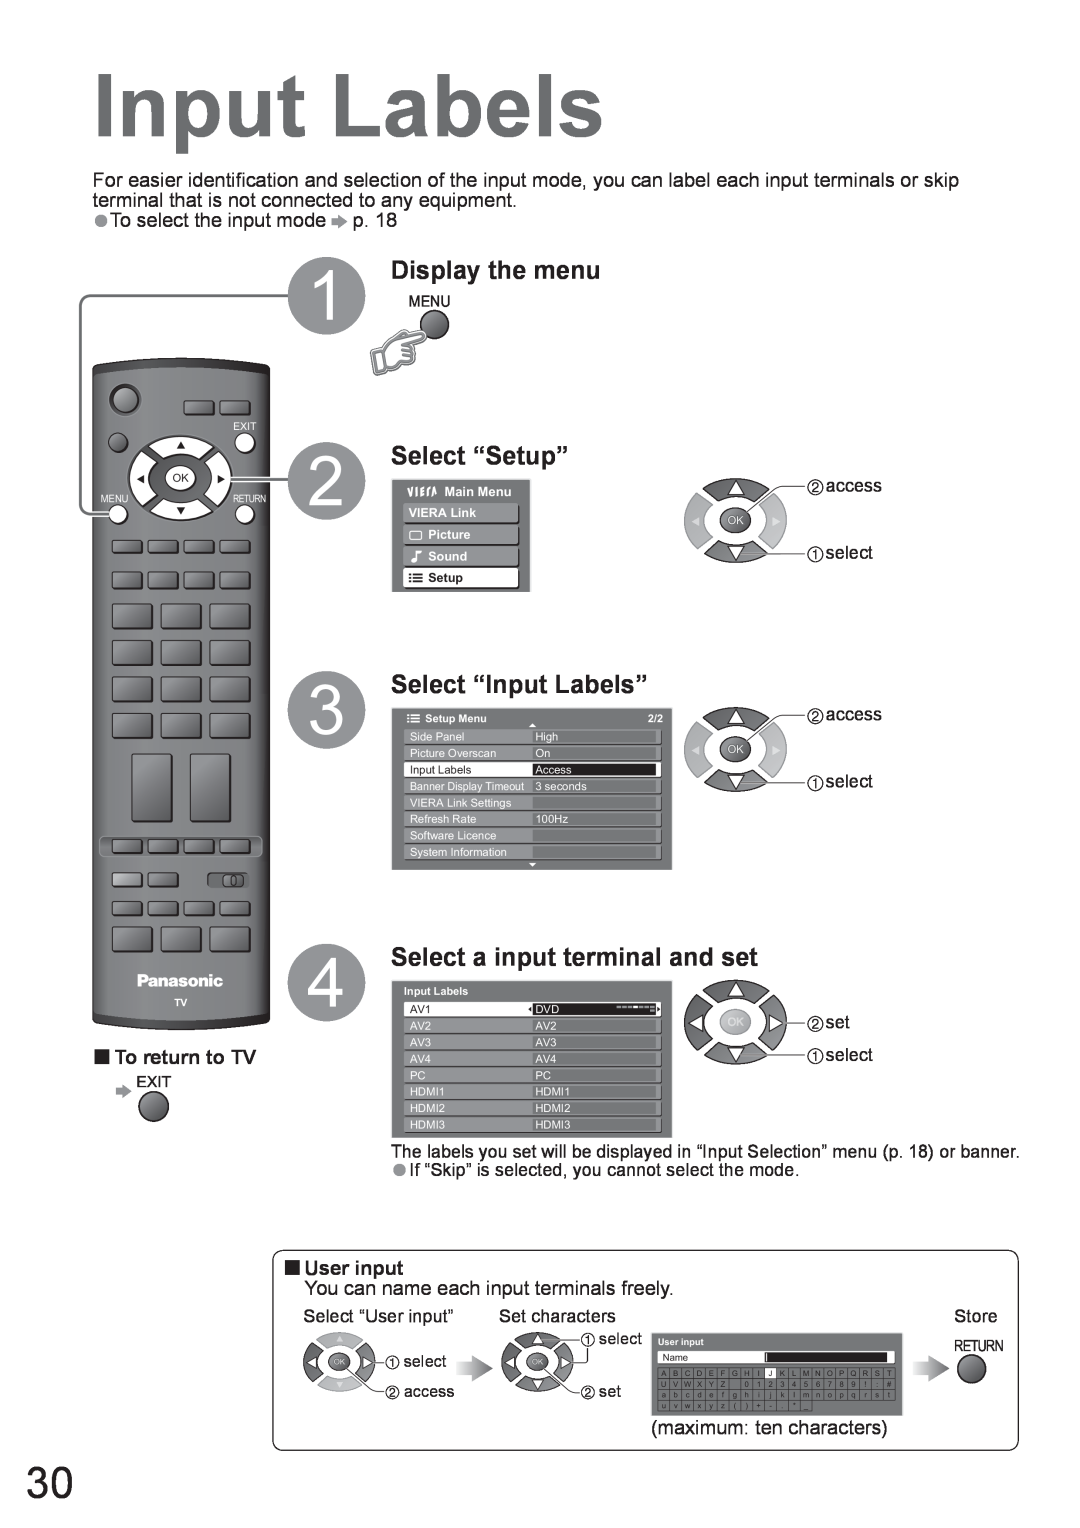 Panasonic TH-50PV80AZ Select “Input Labels”, Select a input terminal and set, Display the menu, Select “Setup”, access 